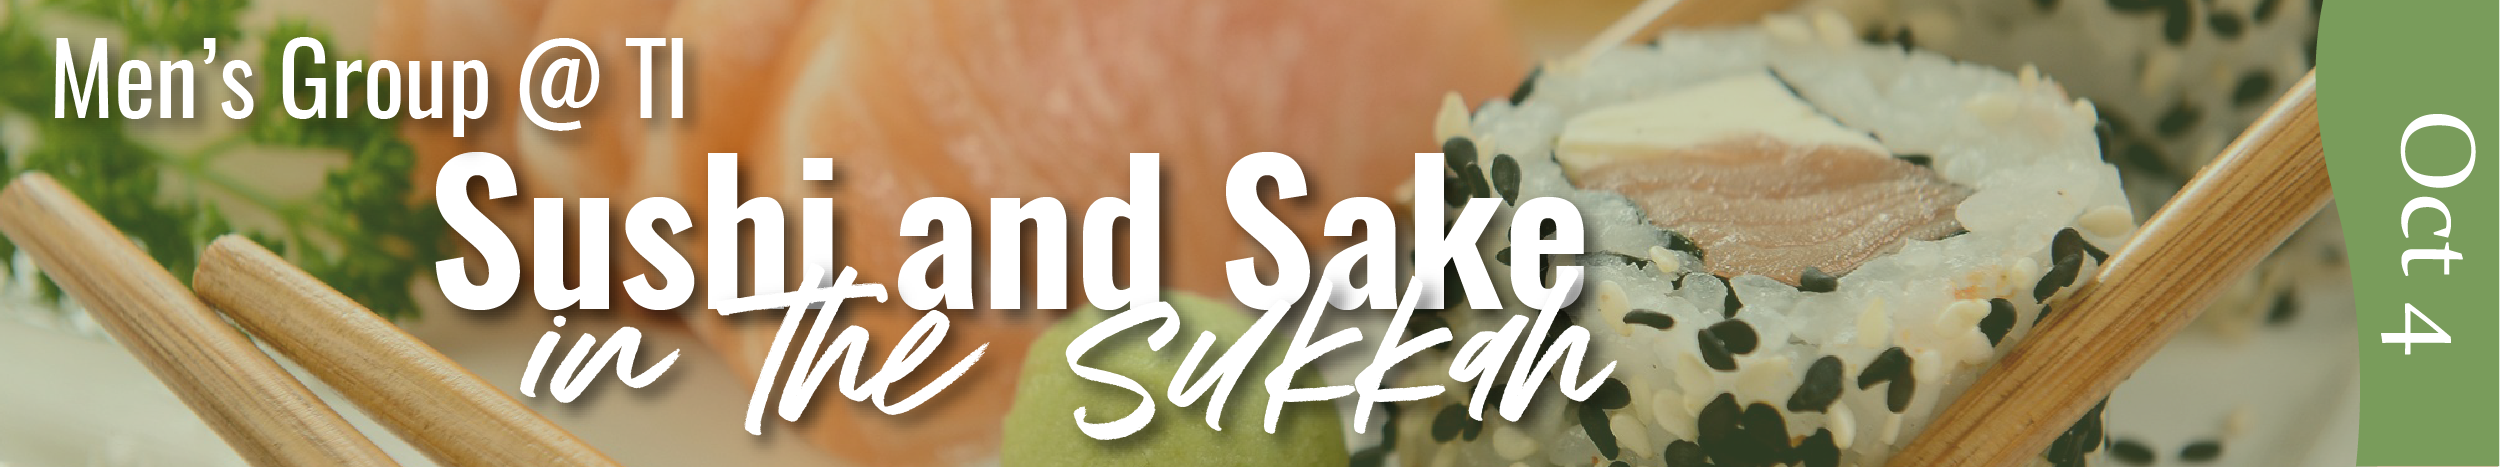 sushi sake sukkah webArtboard 1